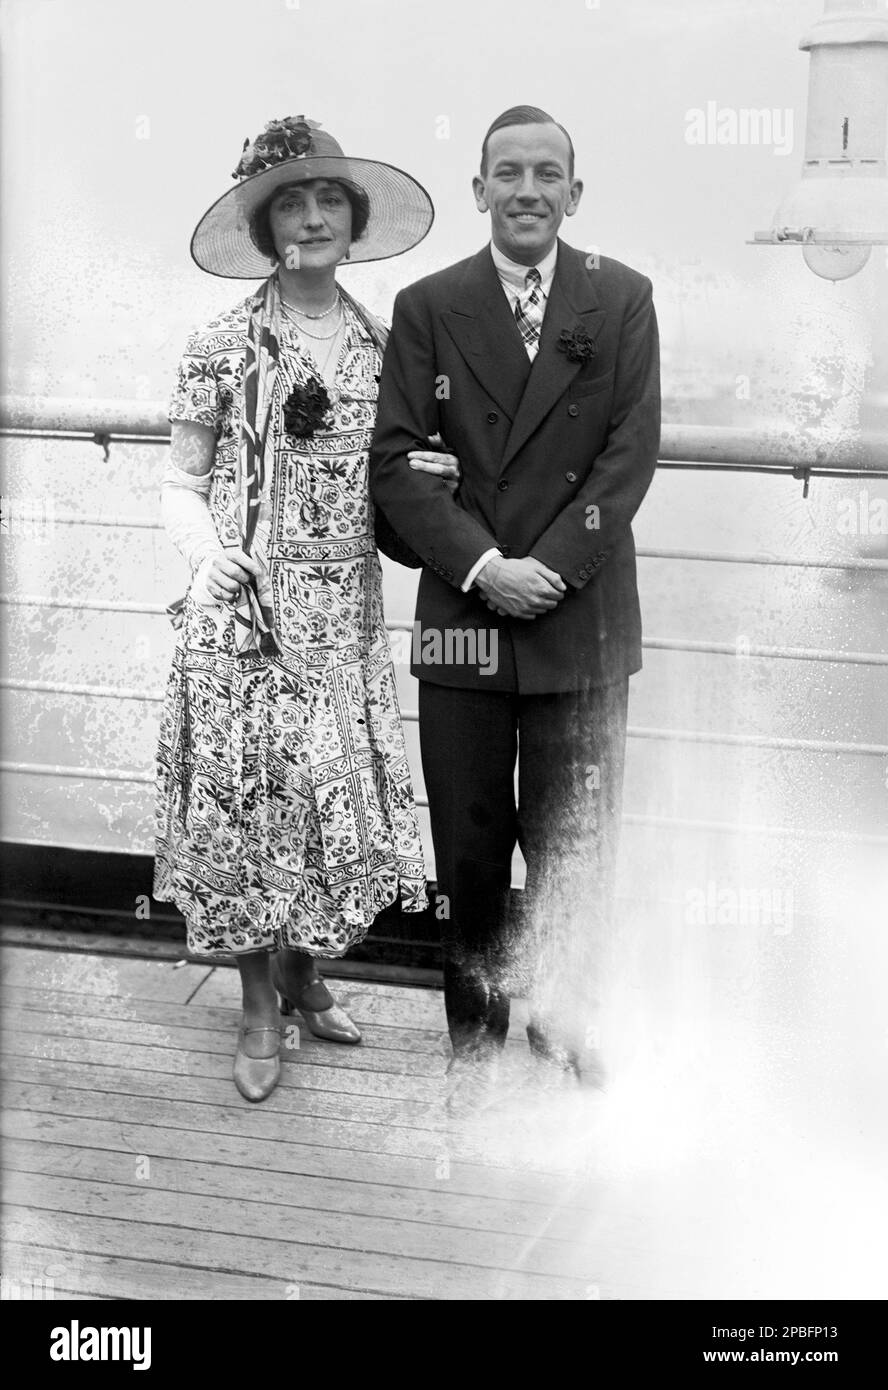 1926 , New York , USA : il drammaturgo e attore britannico NOEL COWARD ( 1899 - 1973 ) arriva negli Stati Uniti con un transatlantico transatlantico dall'Inghilterra con l'amico LILIAN BRAITHWAITE ( 1873 - 1948 ) ingenlis teatro e attrice cinematografica . Dame Lilian Braithwaite era essenzialmente un'attrice teatrale che ha fatto pochi film. Ha suonato la madre di Ivor Novello in 'Downhill' di Hitchcock, ma alcuni dei suoi altri film sono di rilievo. Solo un film dopo il 1932 - 'A Man About the House'. Nominato comandante dama dell'Impero britannico (D. L.C.) dal Re per i suoi servizi alle arti - FILM - commediografo - dram Foto Stock